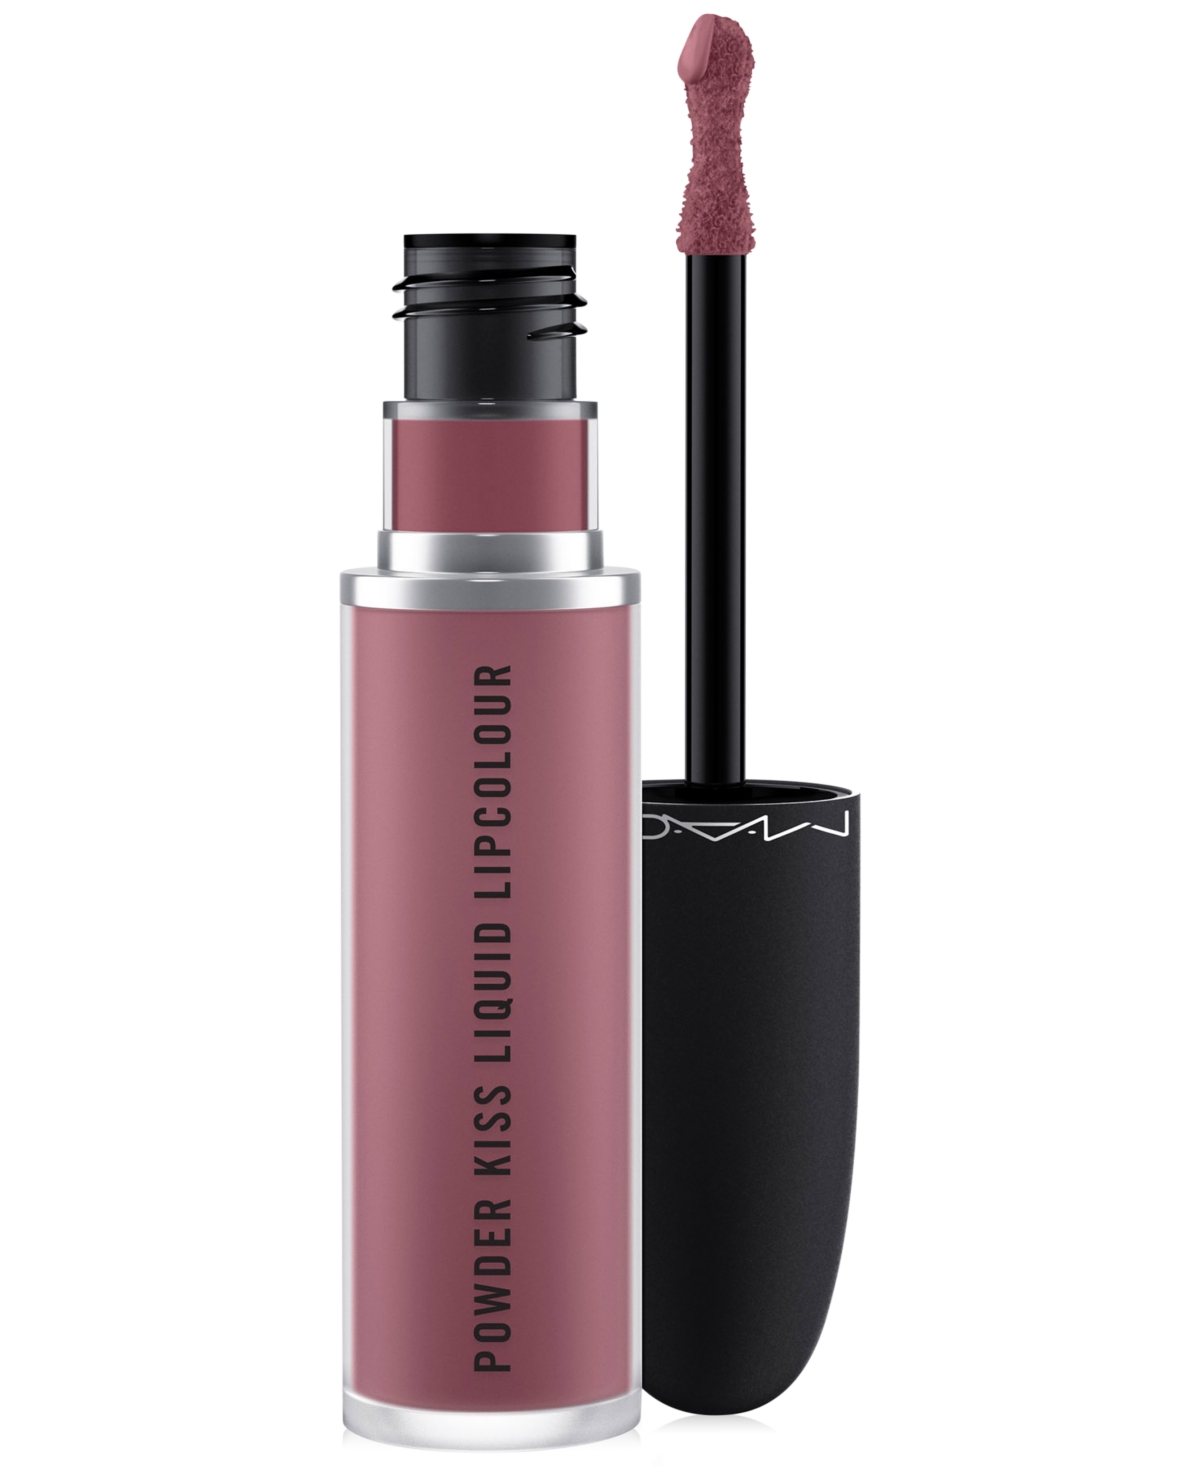 Mac Powder Kiss Liquid Lipcolour In Ferosh (muted Dusty Pink)